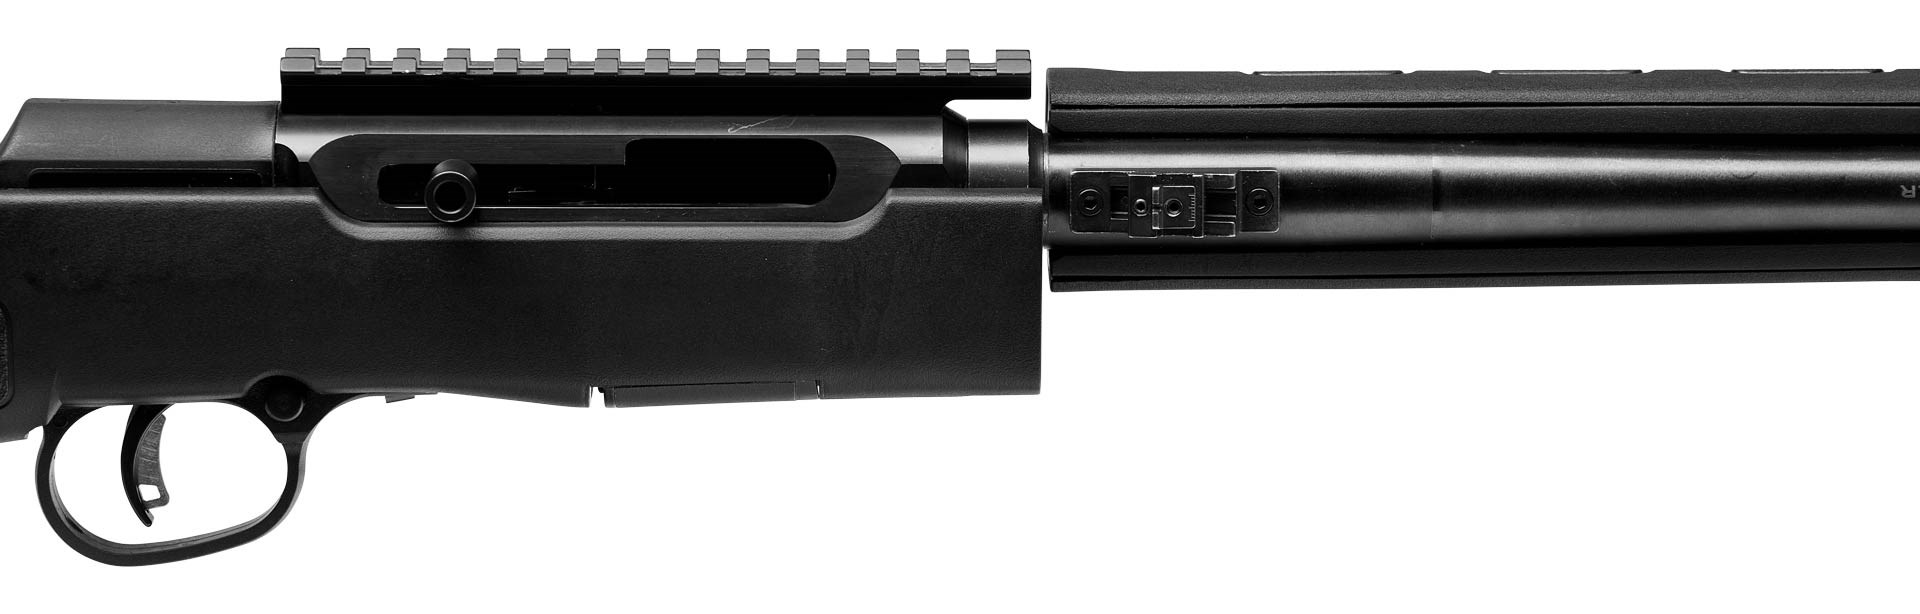 Savage Arms A22 Takedown assembly gun rifle parts